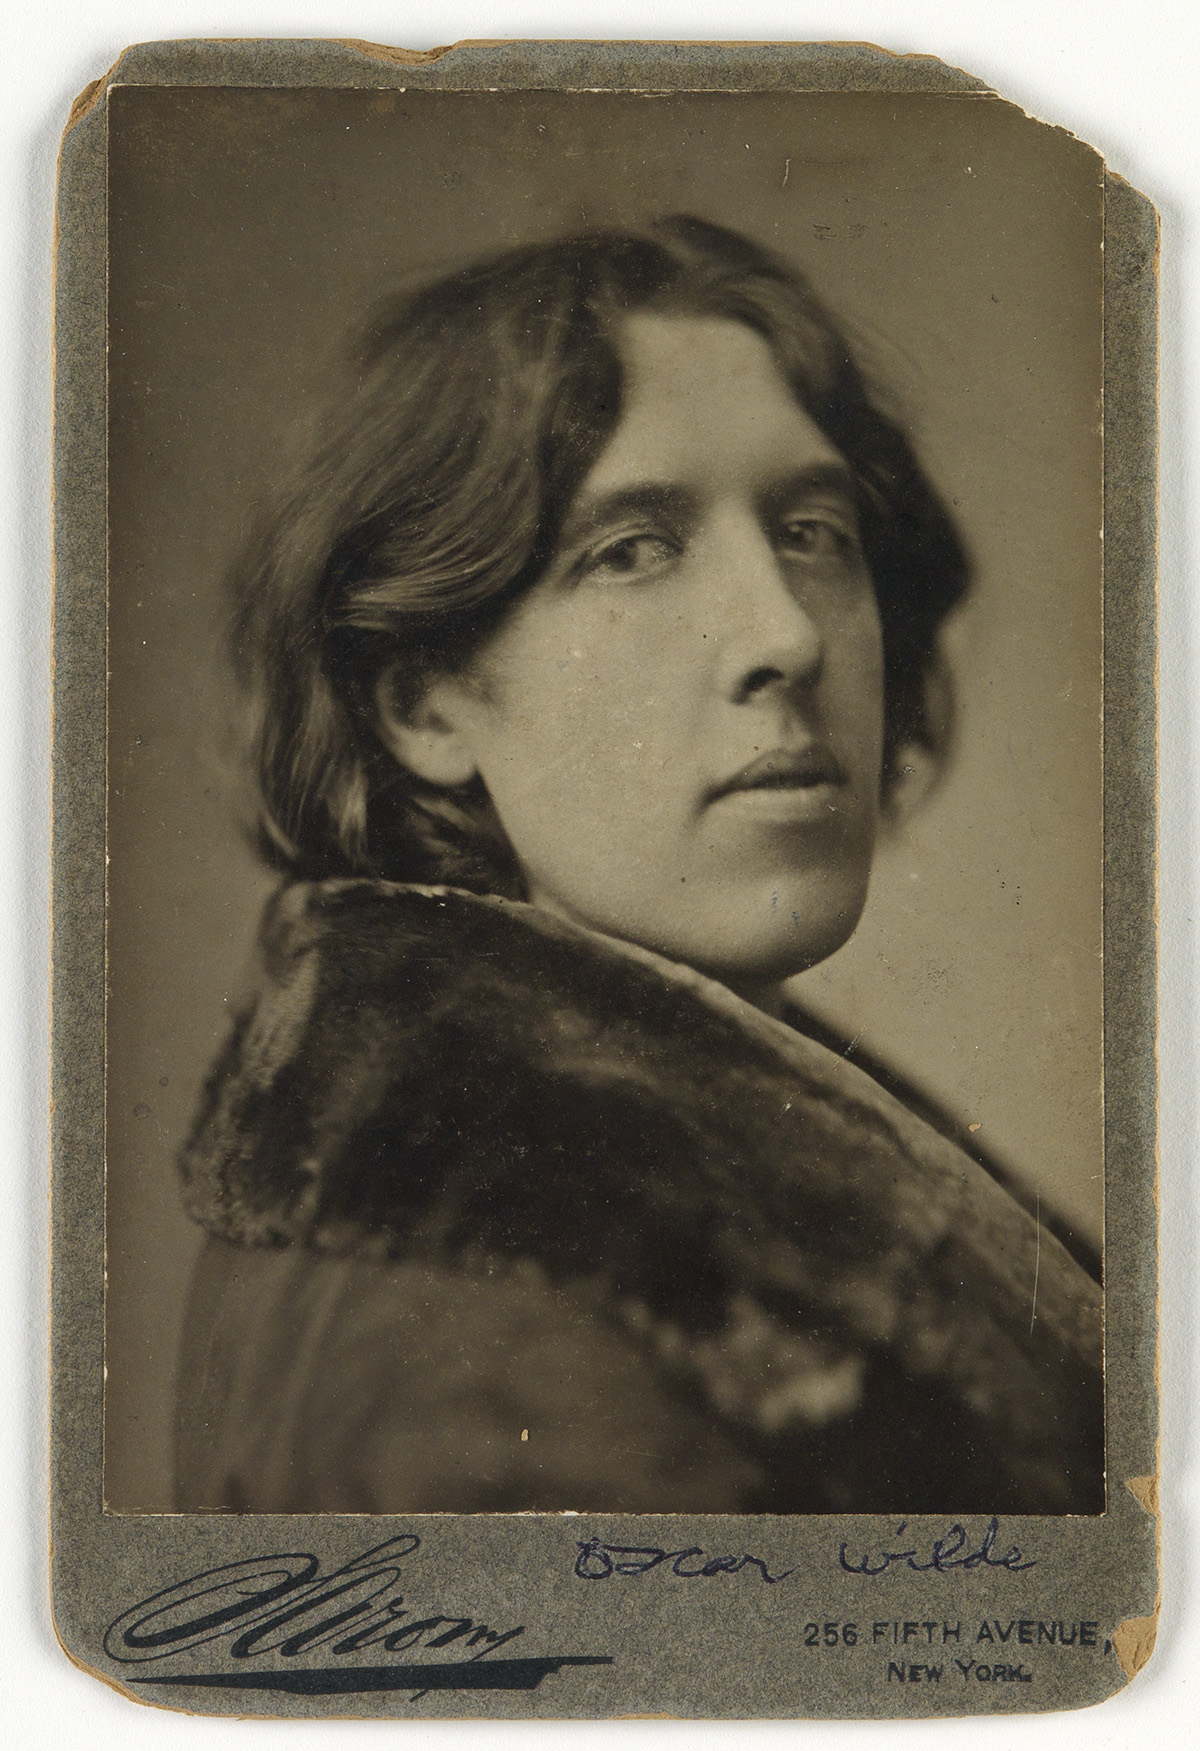 NAPOLEON SARONY (1821-1896) Oscar Wilde.